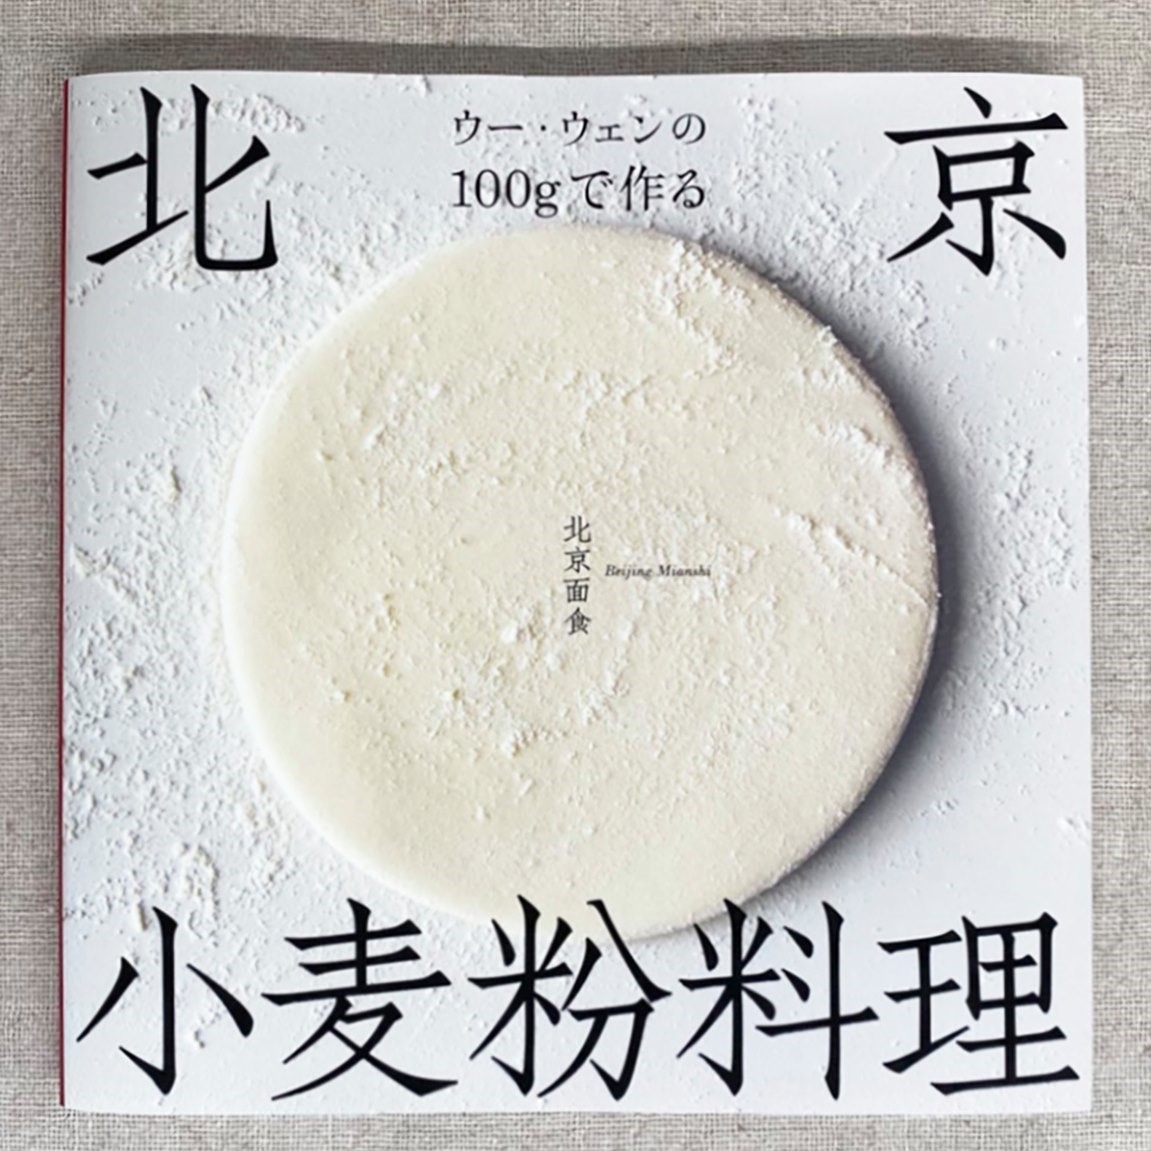 新刊『ウー・ウェンの100gで作る北京小麦粉料理』 | 高橋書店